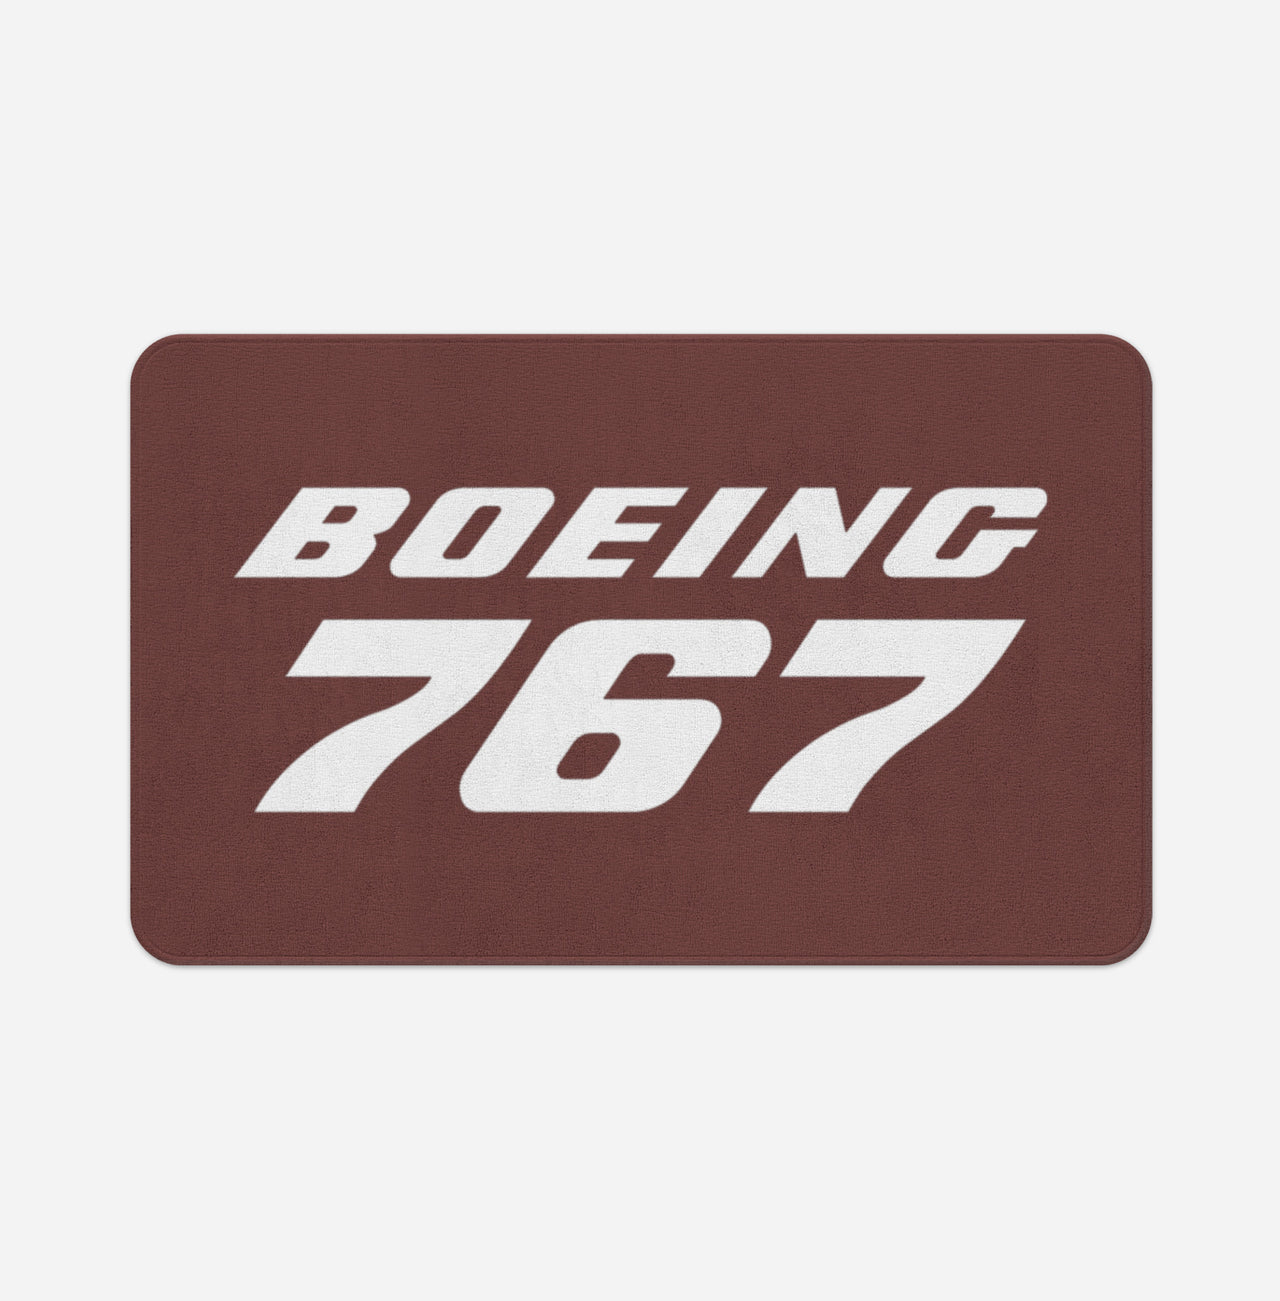 Boeing 767 & Text Designed Bath Mats